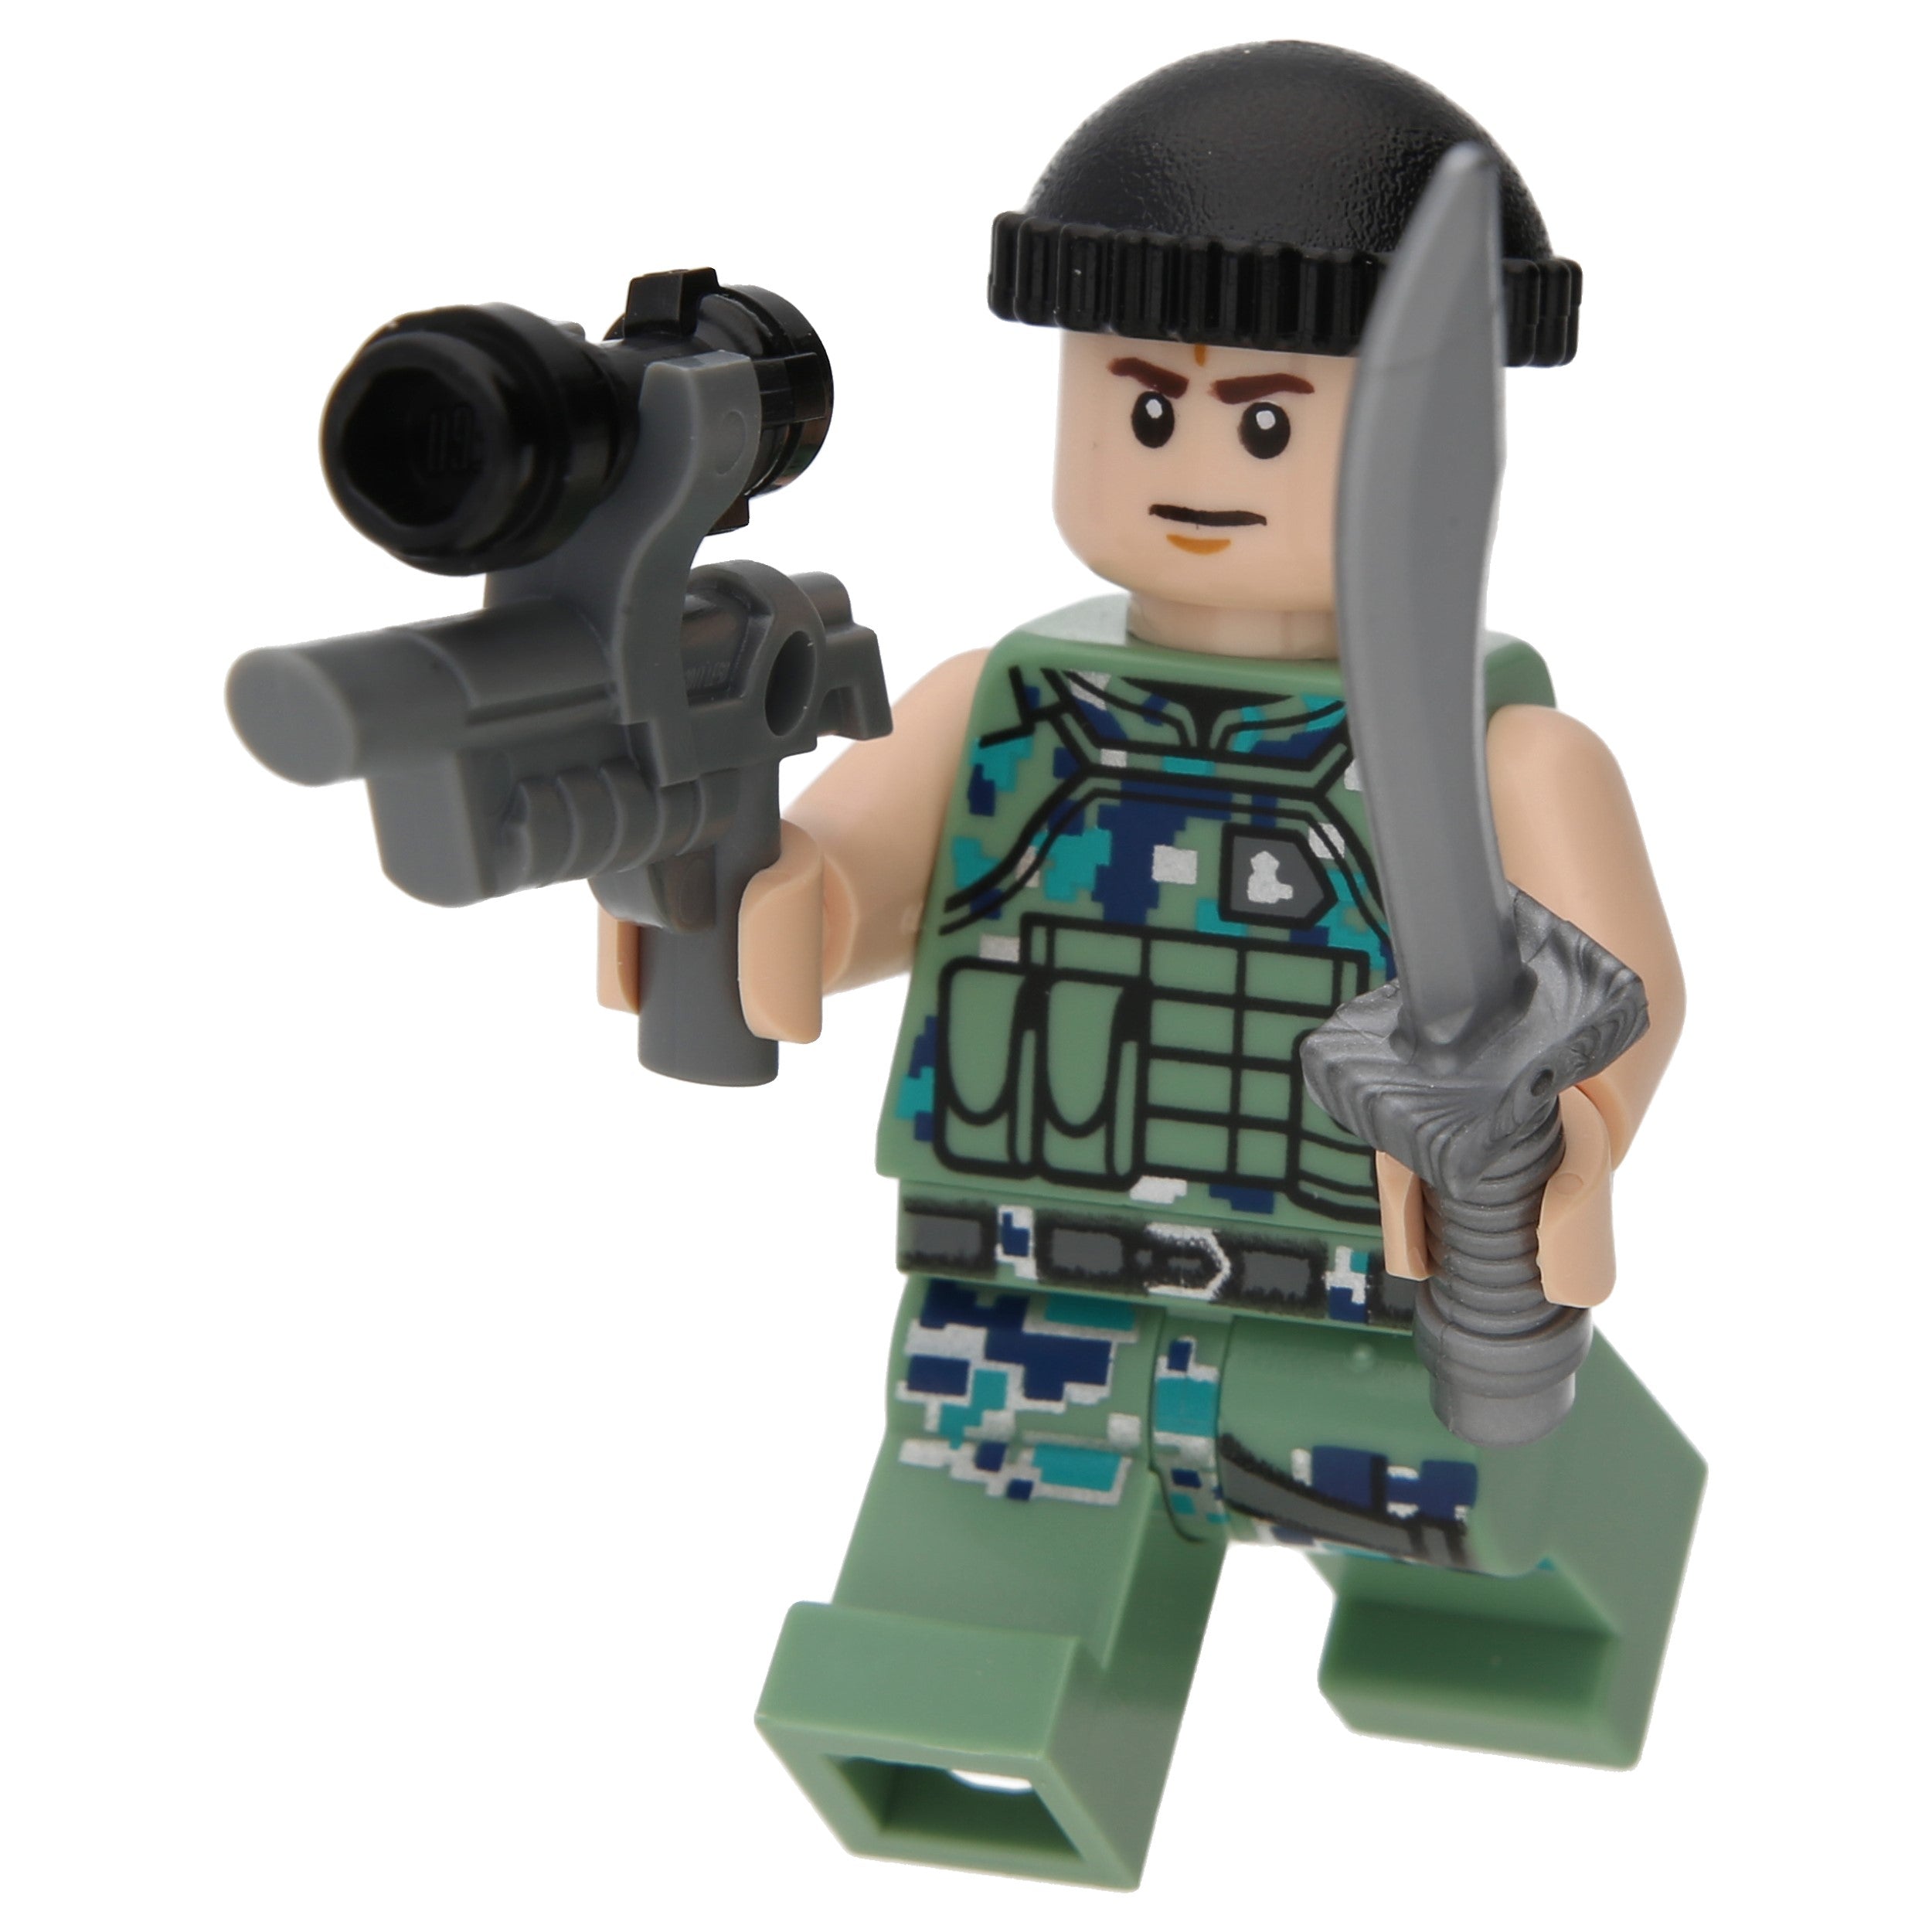 LEGO Avatar Minifigures - RDA Crab Suit Pilot with Gun - avt017 - Avat